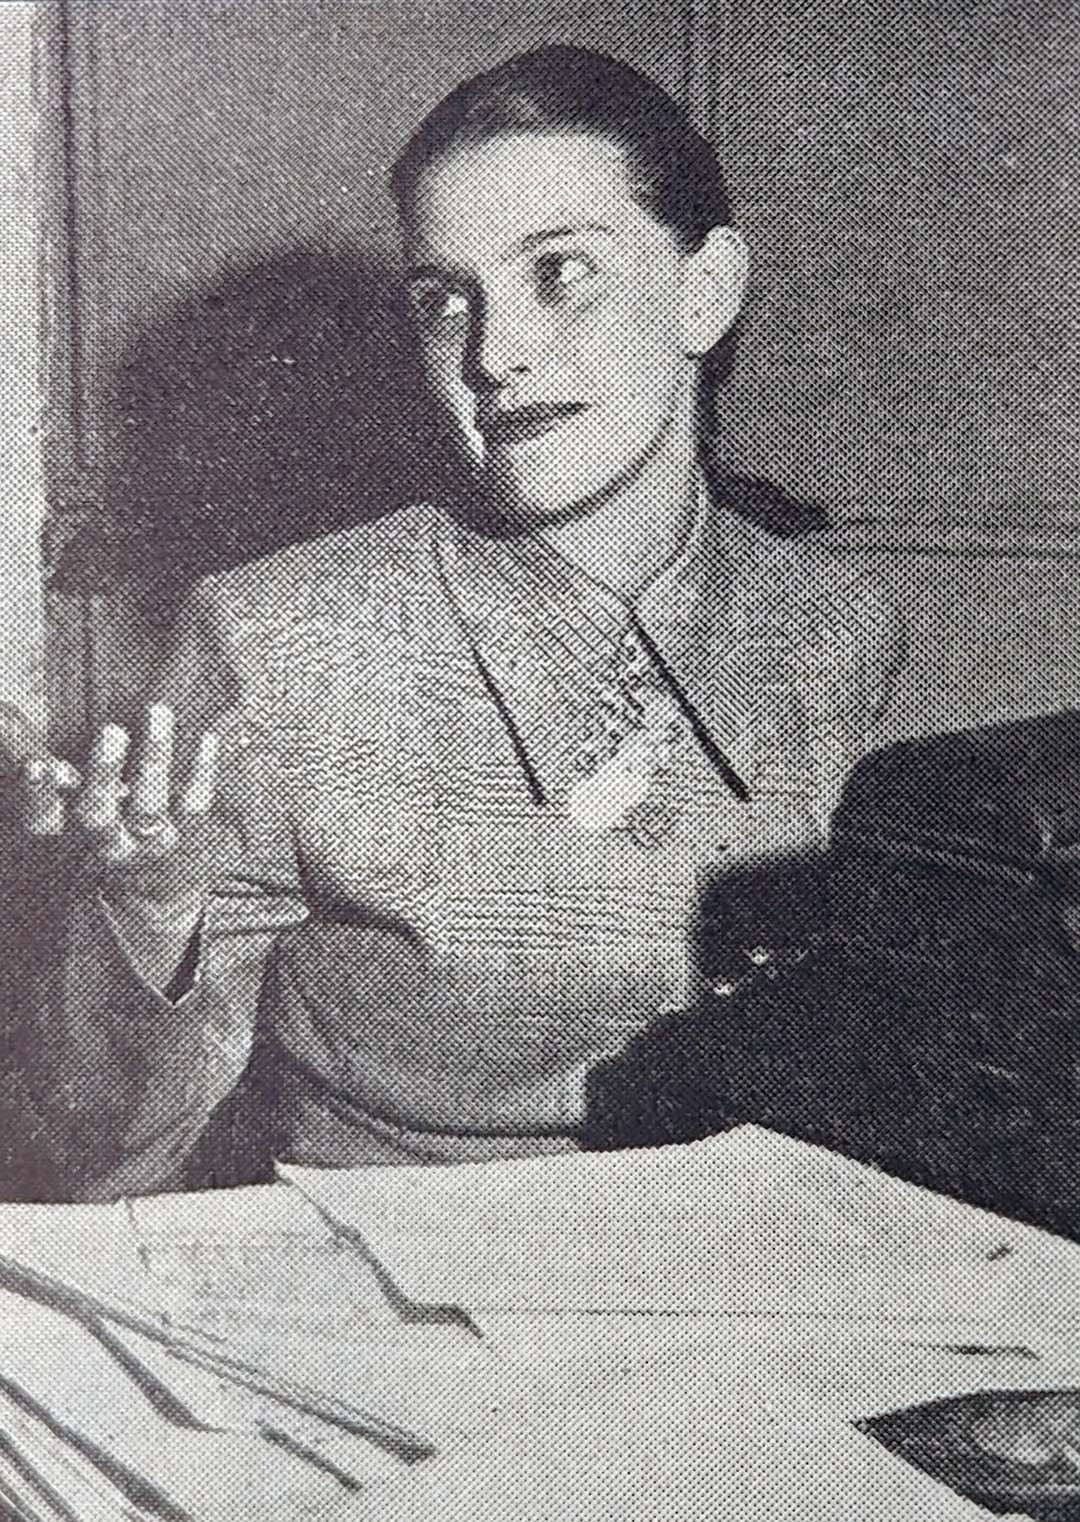 Gloria Valencia de Castaño (Graduada de Humanidades de Los Andes en 1957, fundadora de la reconocida emisora HJCK y apodada “primera dama de la televisión colombiana”). Foto: Revista Semana del 27 de septiembre de 1952. 